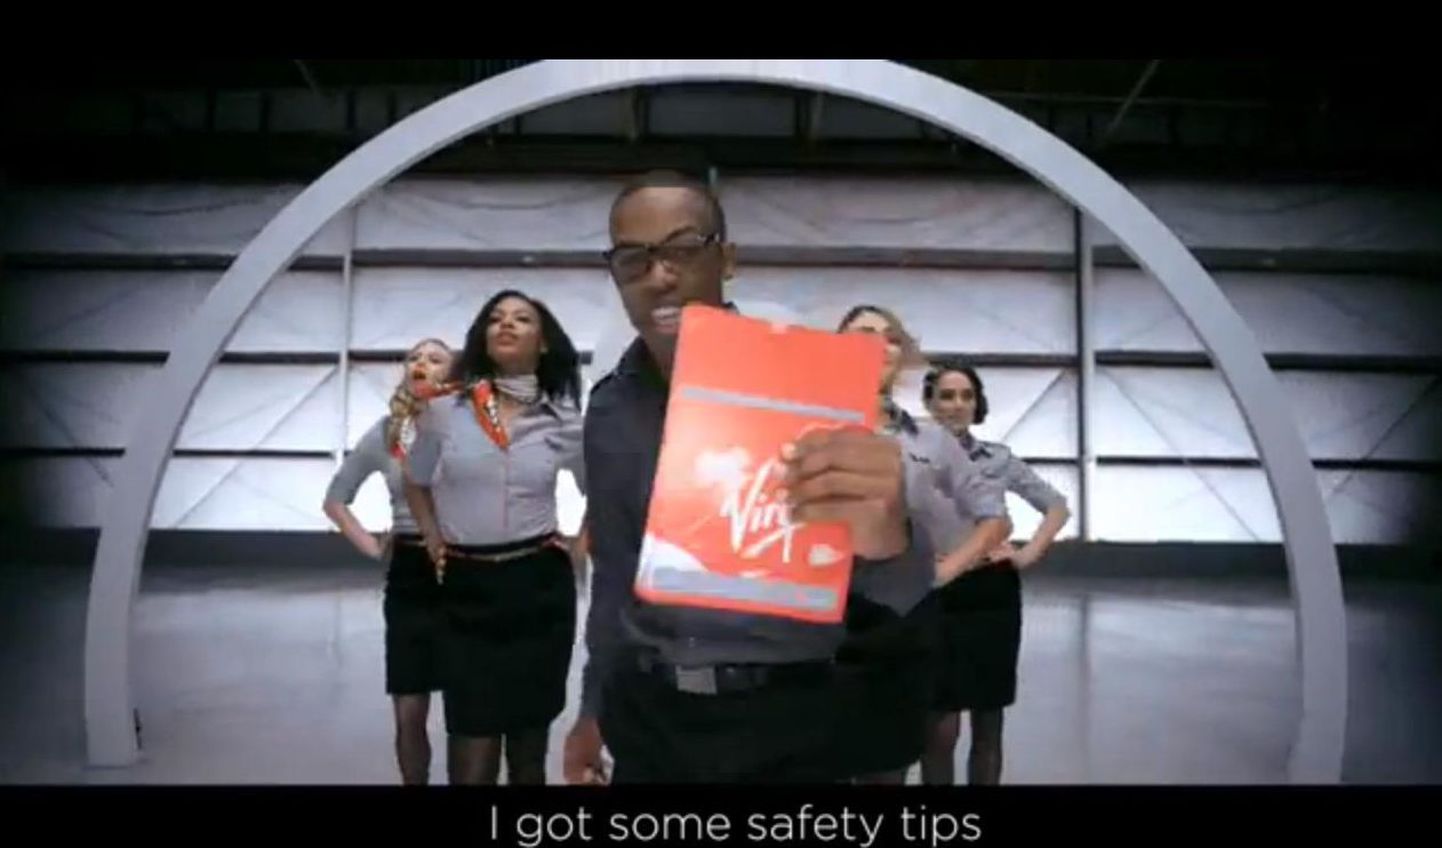 Kuidas reisijaid panna kuulama igavaid ohutusnõudeid? Laulu ja tantsu abil